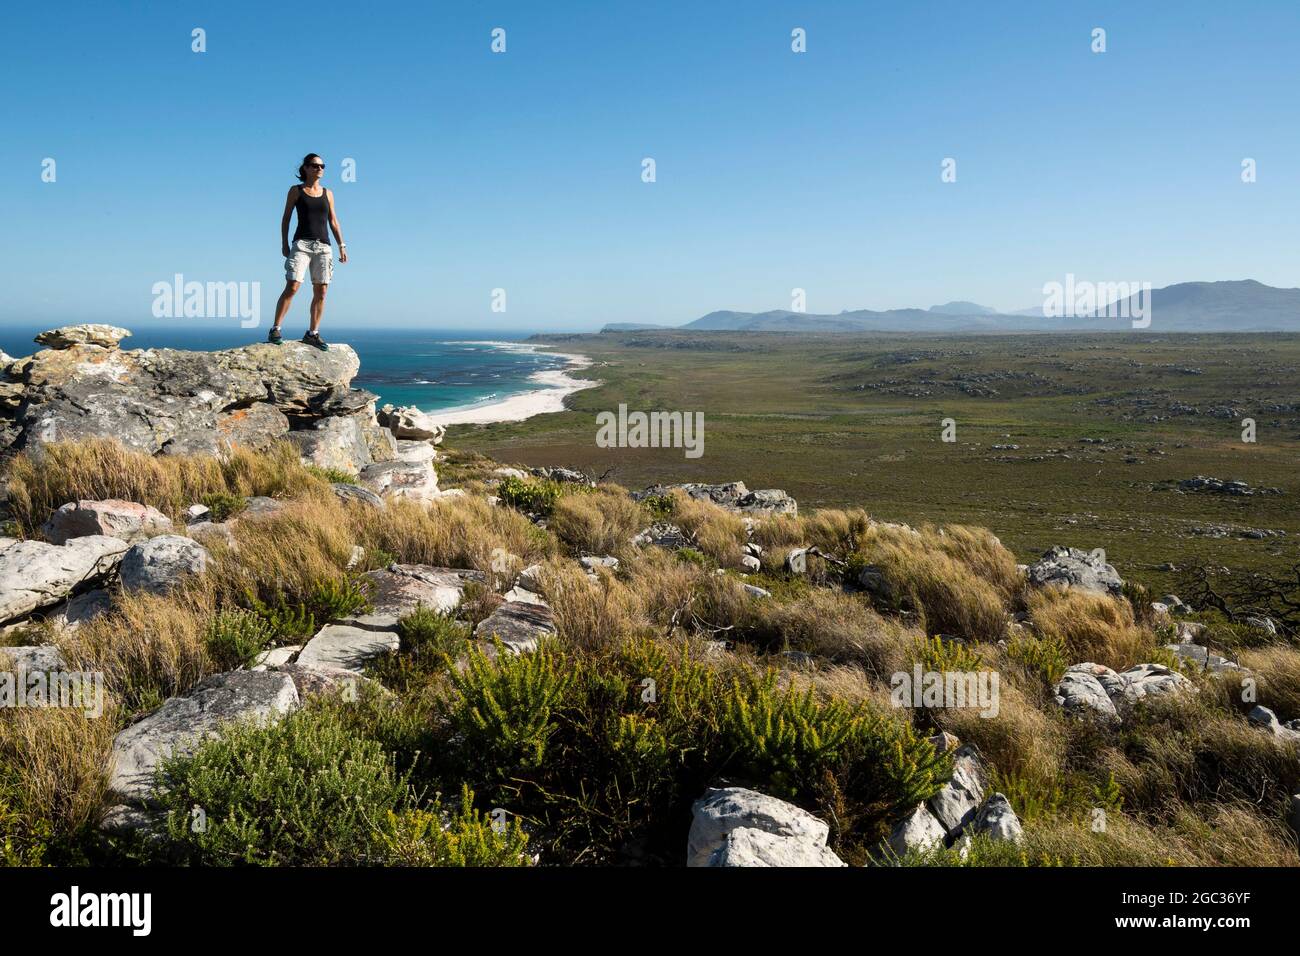 Excursionista, Reserva Natural del Cabo de Buena Esperanza, Península del Cabo, Sudáfrica Foto de stock